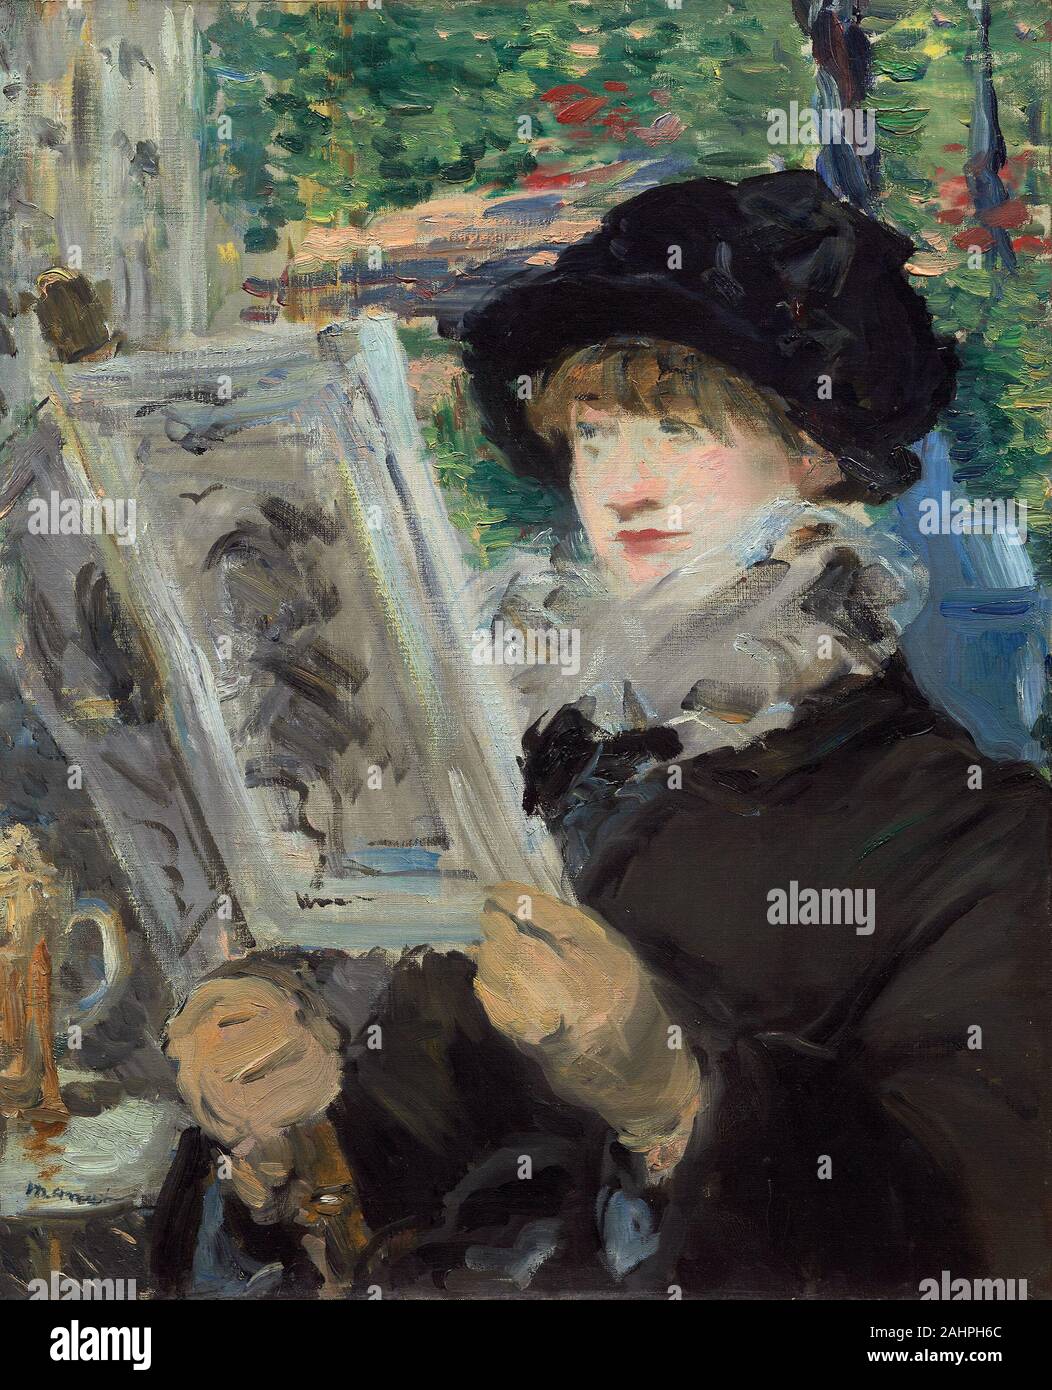 Édouard Manet. Mujer leyendo. 1880-1881. Francia. Óleo sobre lienzo durante  el siglo xix, cafés parisinos eran los lugares de encuentro de artistas y  escritores y son lugares ideales para observar la escena